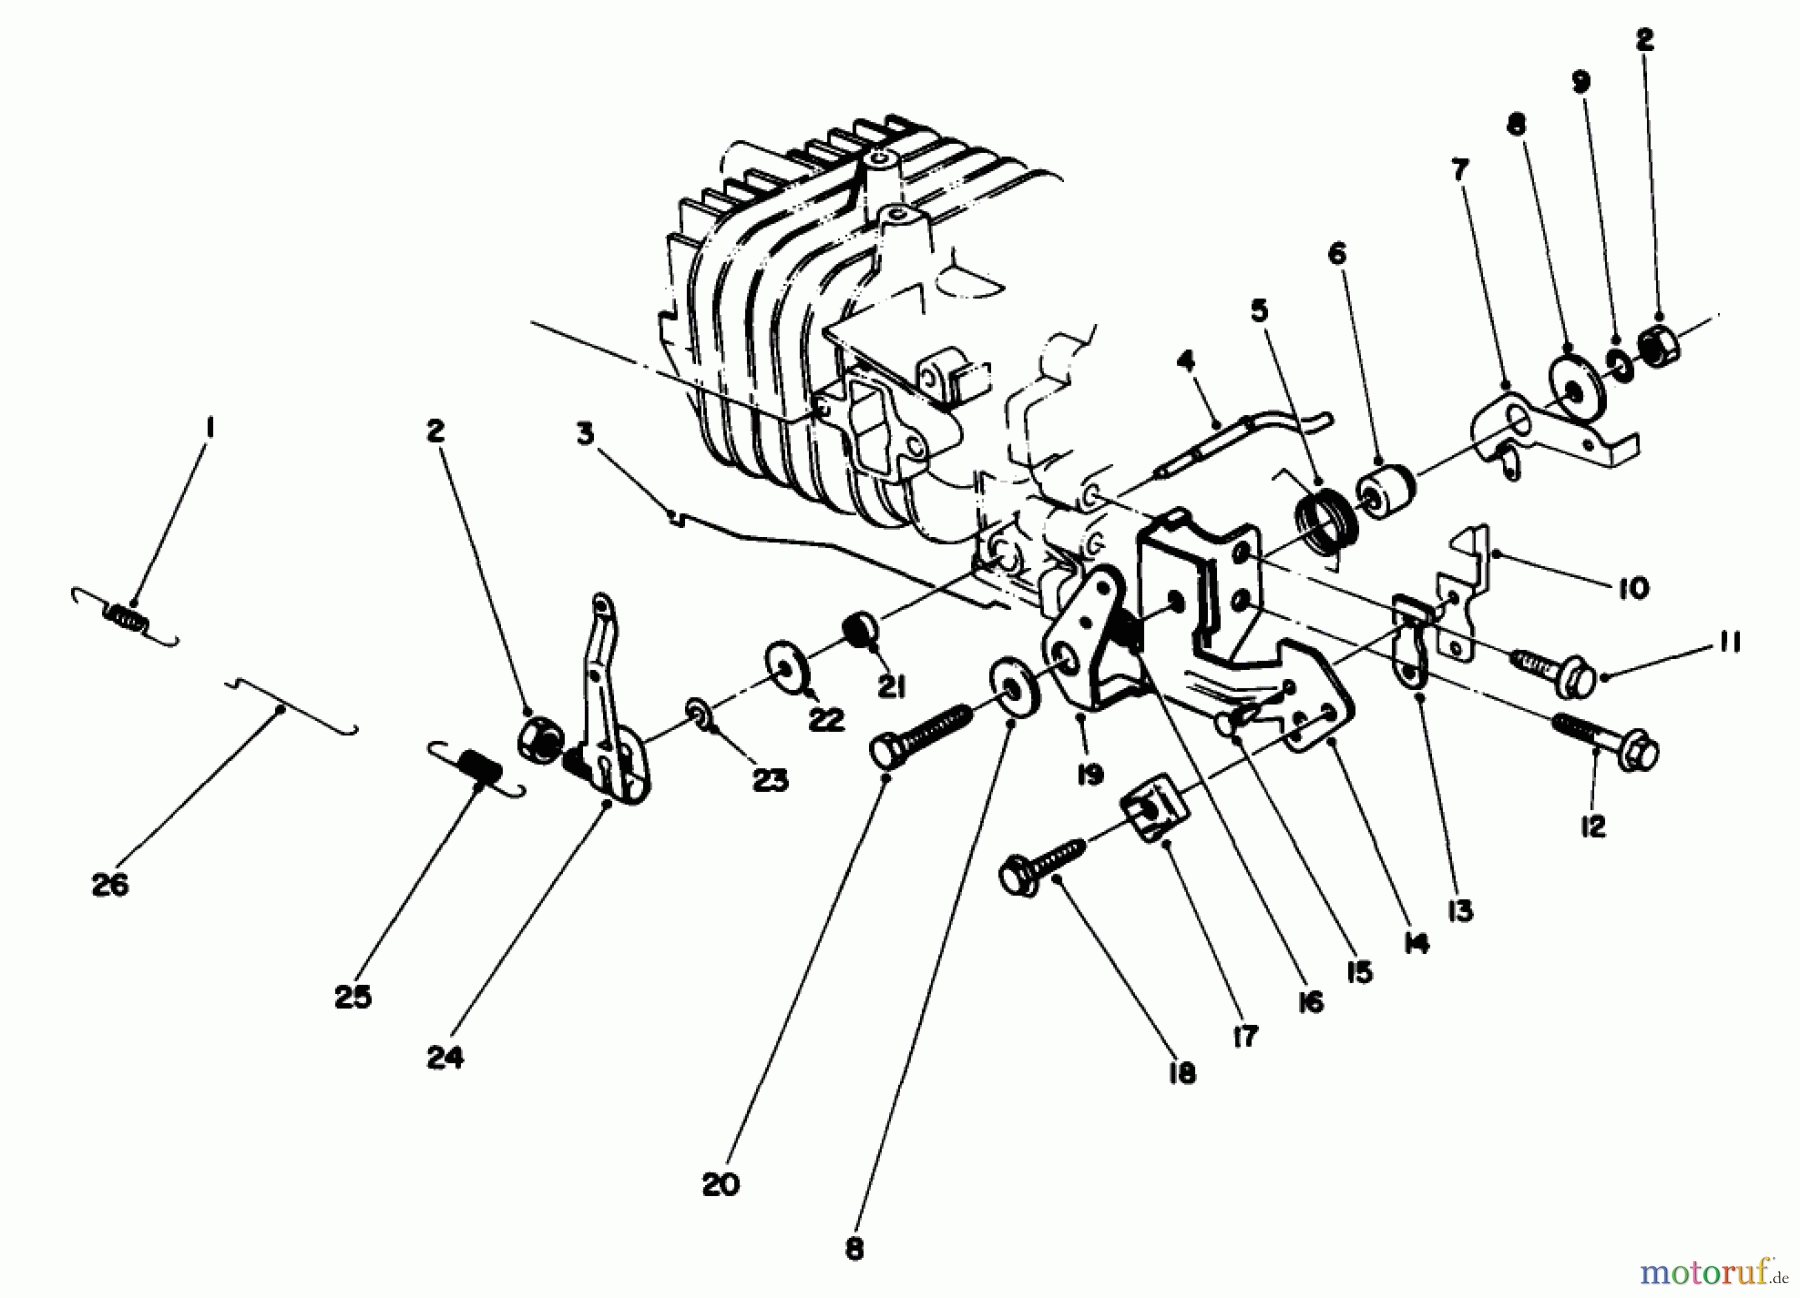  Toro Neu Mowers, Walk-Behind Seite 2 22030 - Toro Lawnmower, 1989 (9000001-9999999) ENGINE ASSEMBLY MODEL NO. 47PH7 #4